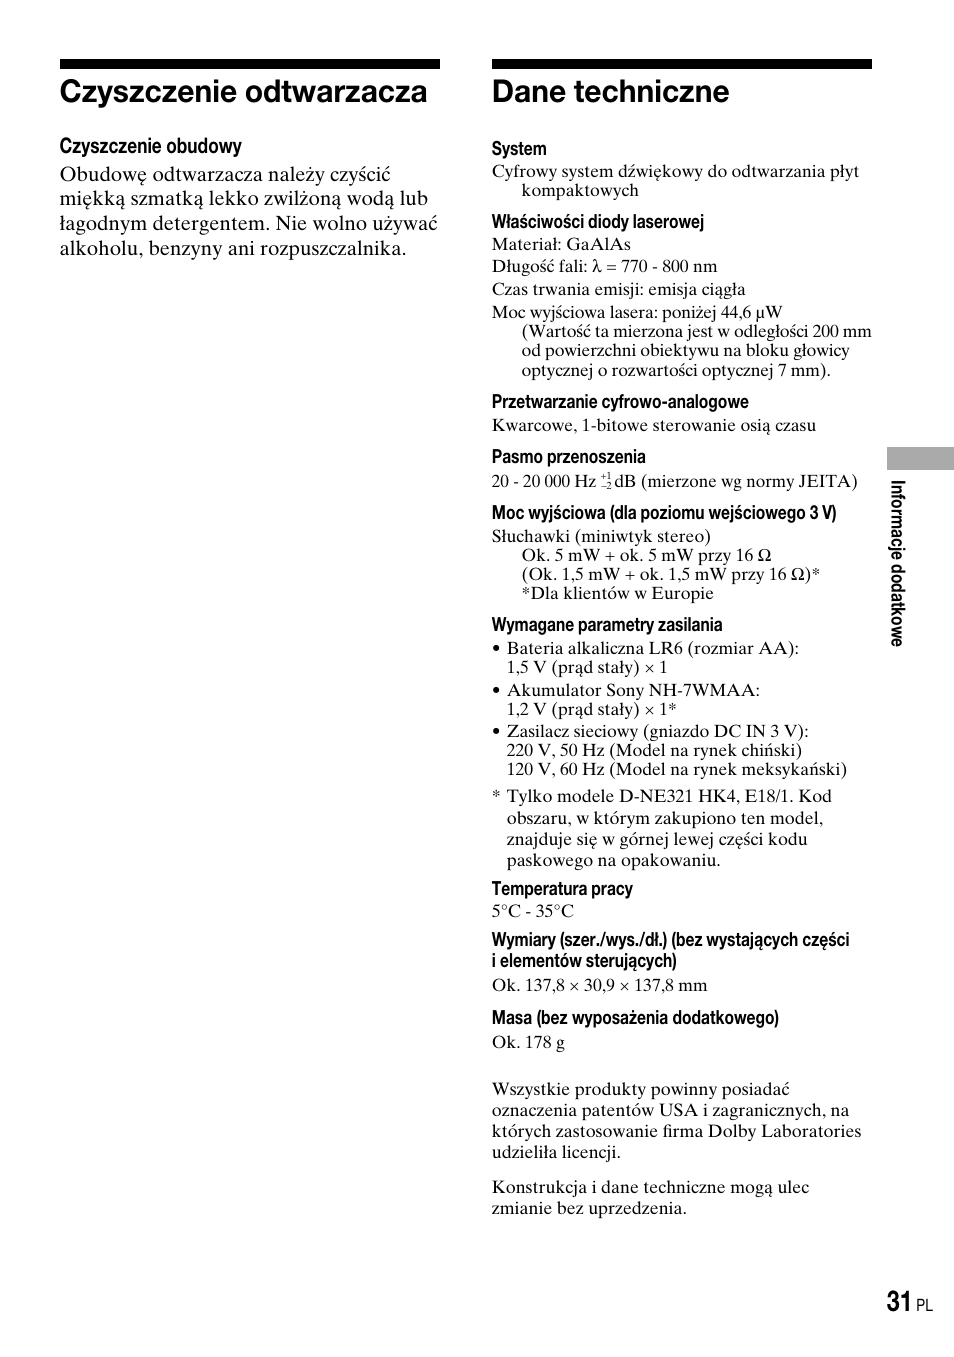 Czyszczenie odtwarzacza, Dane techniczne | Инструкция по эксплуатации Sony D-NE320 | Страница 63 / 100